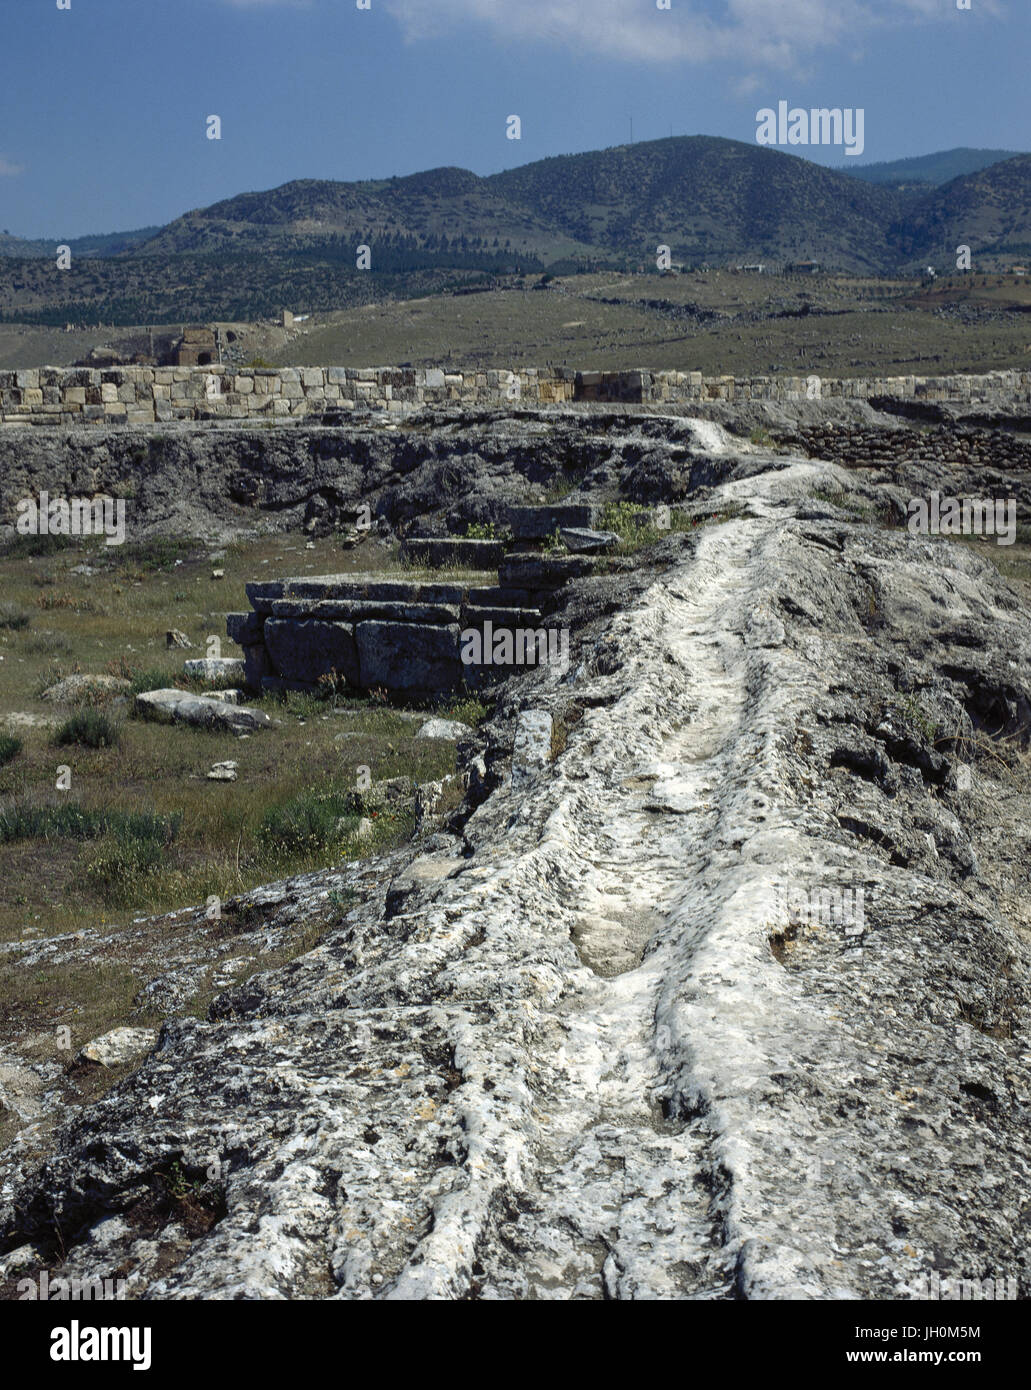 La Turchia. Hierapolis. Antica città ondata, inizio del II secolo A.C. Epoca ellenistica. La canalizzazione. Rovine. Foto Stock